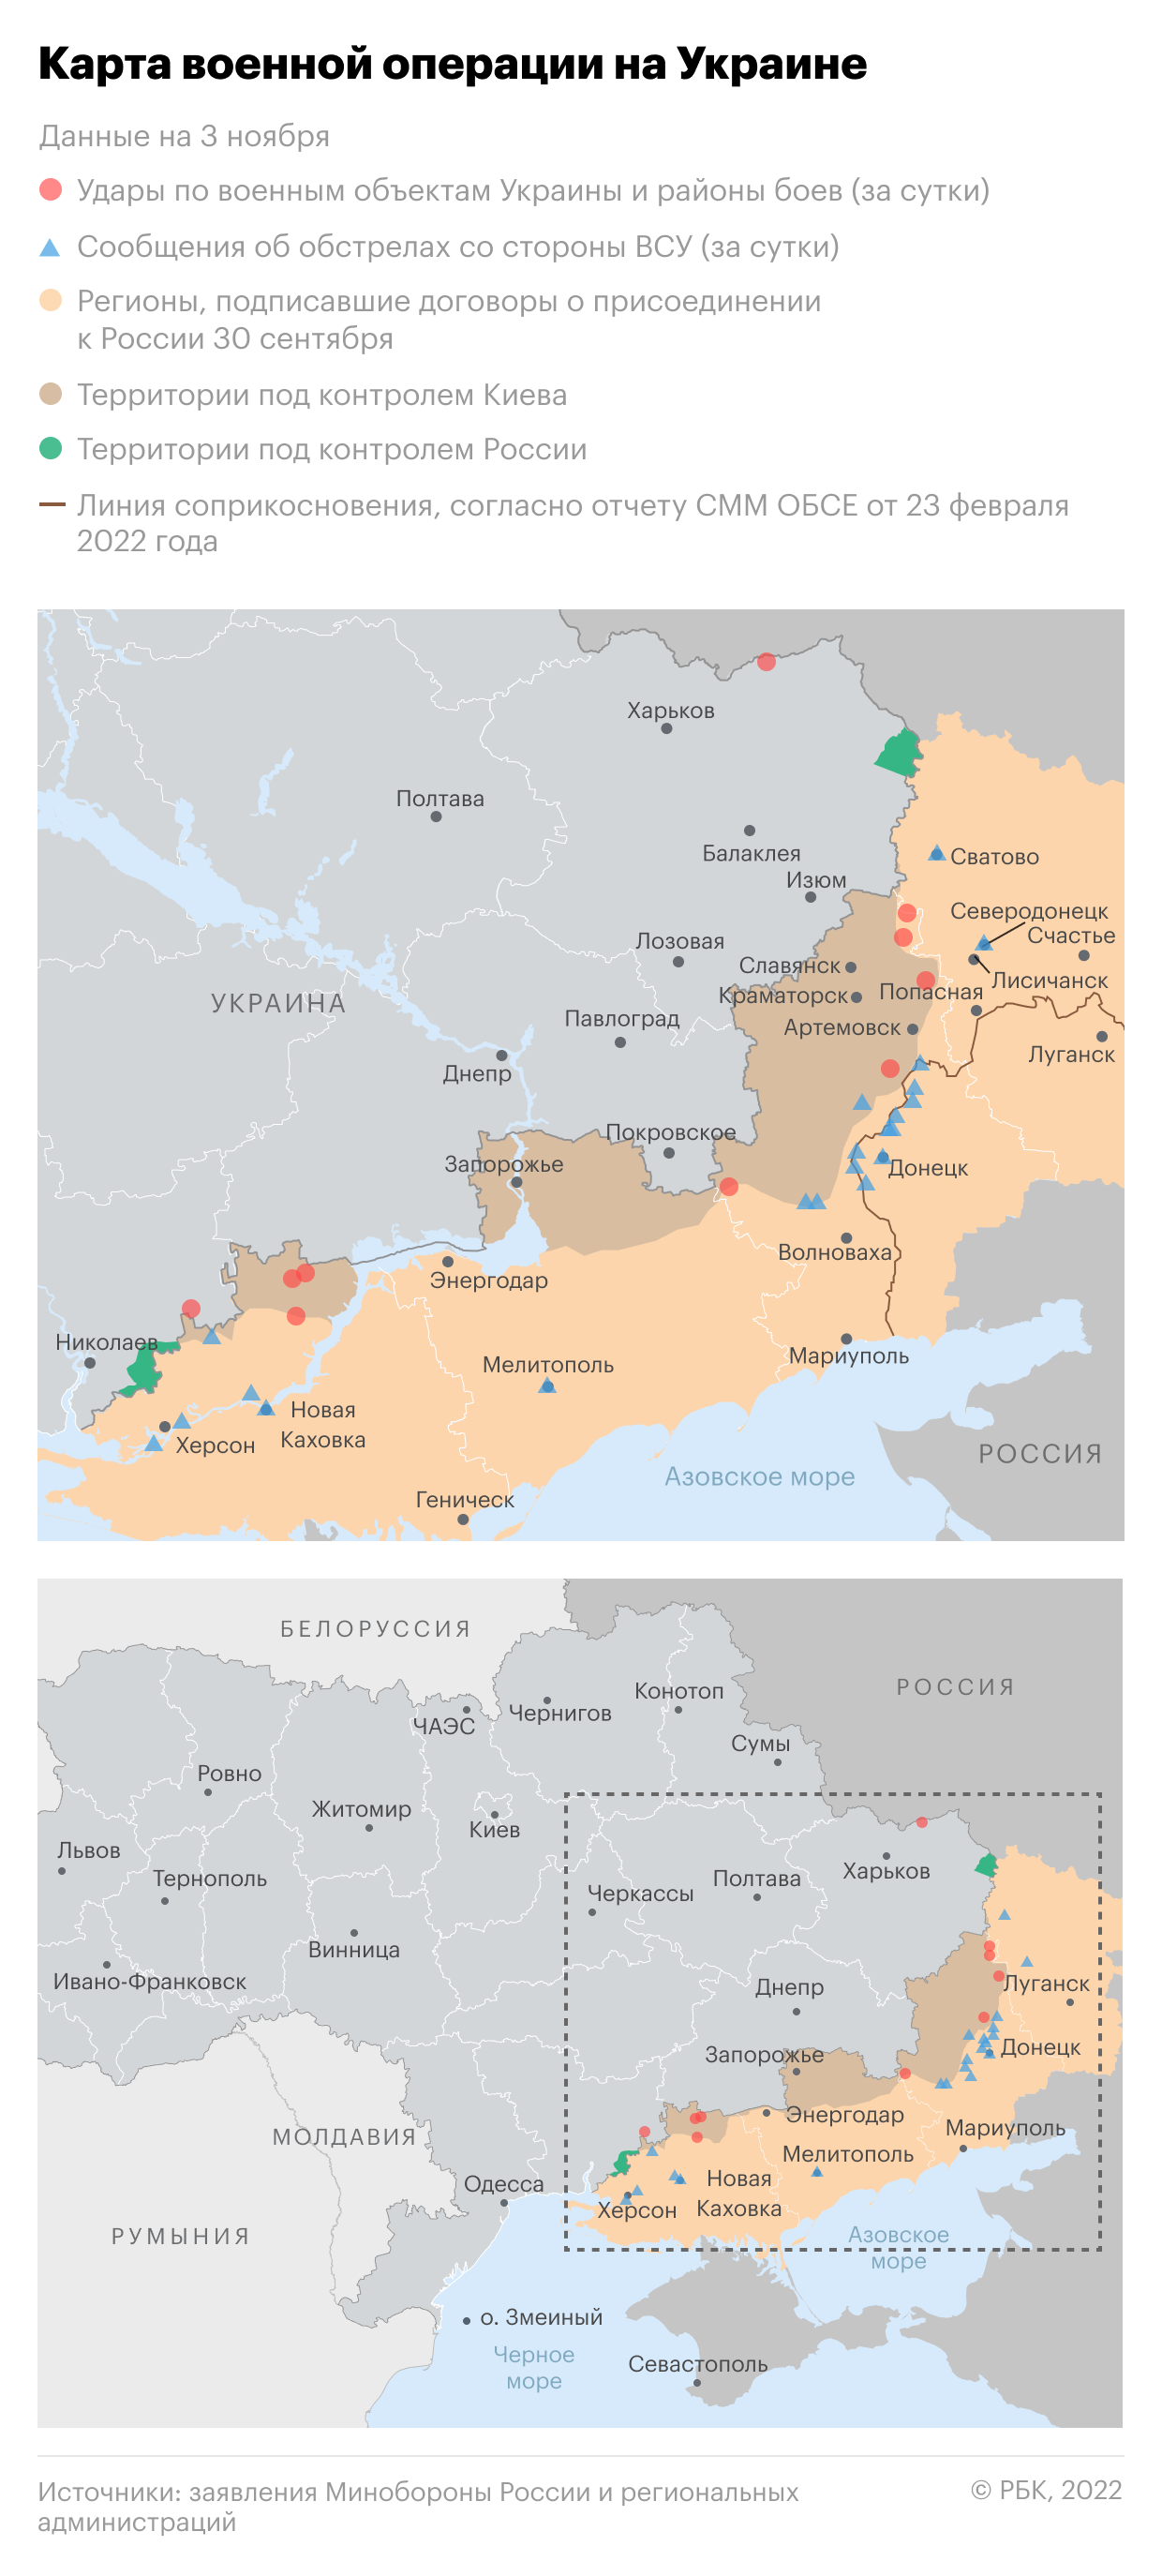 Военная операция на Украине. Карта"/>













